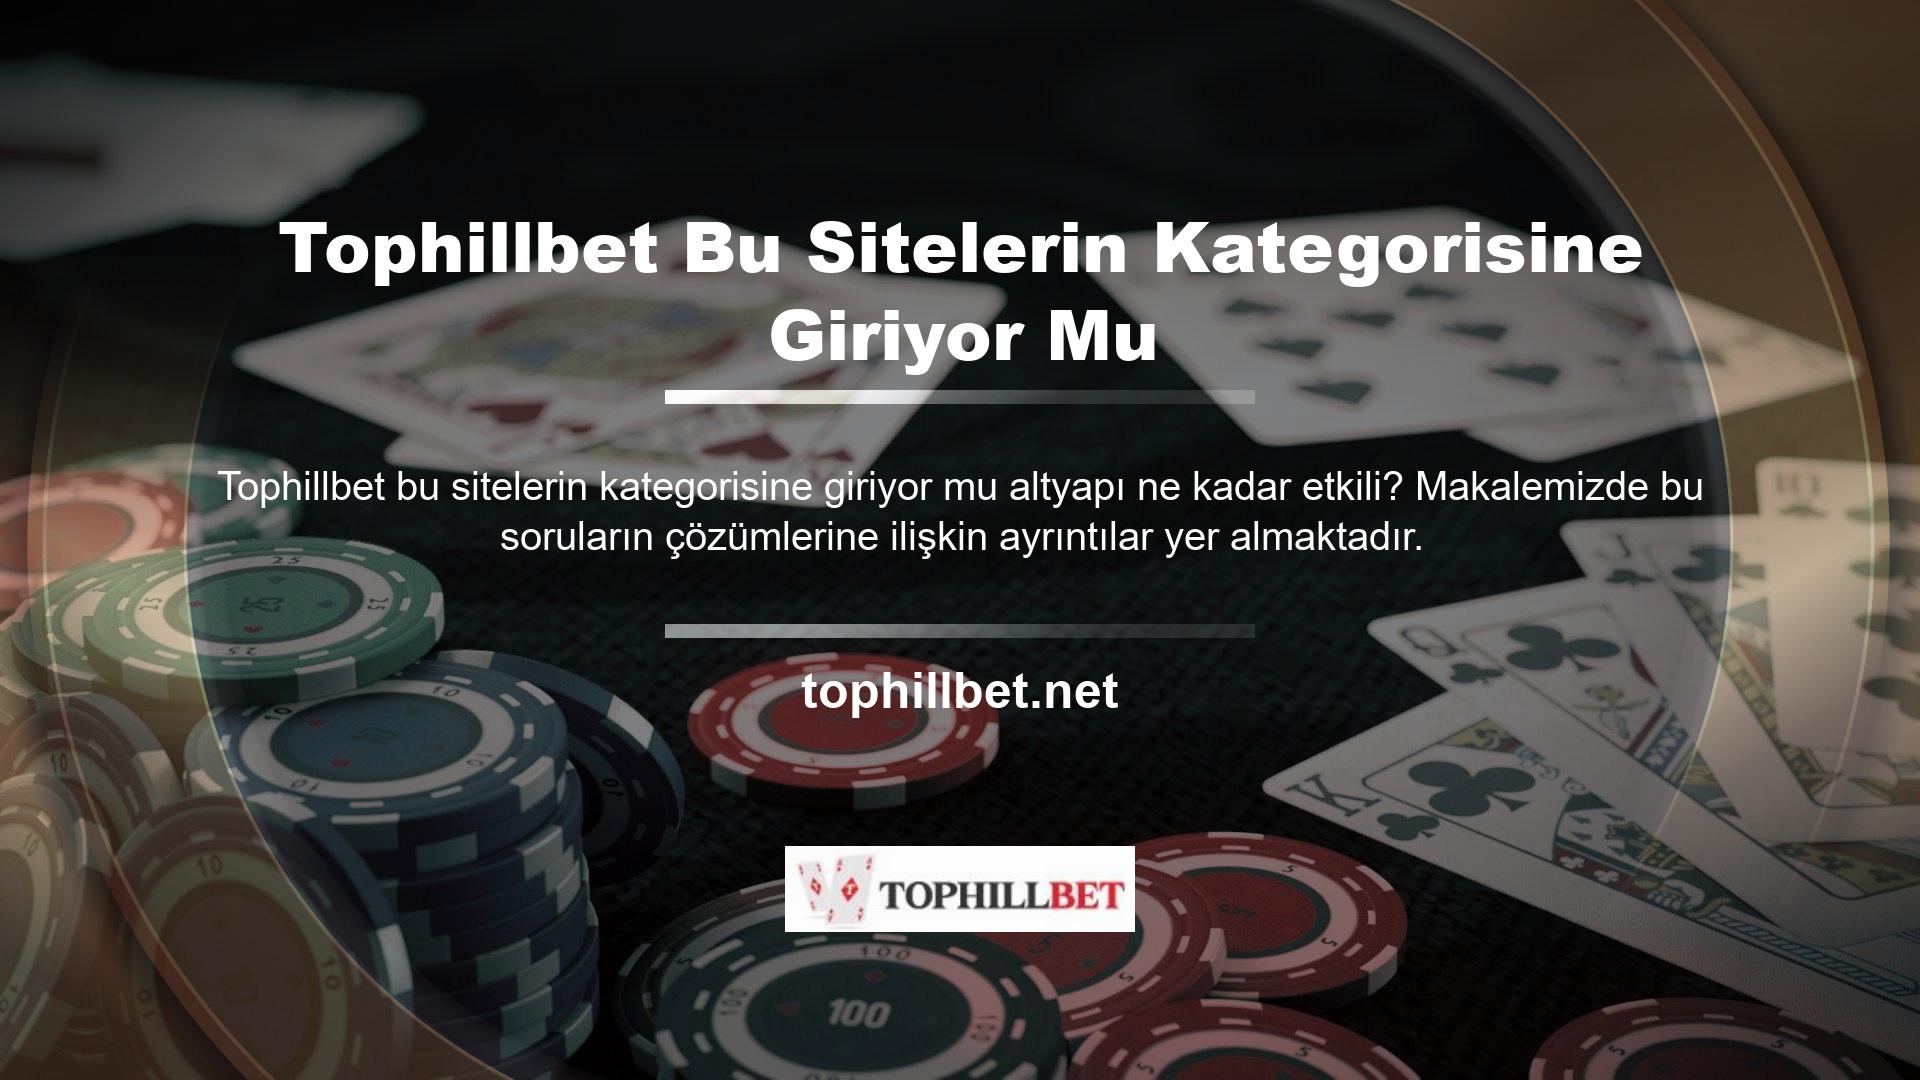 Dolandırıcı bir bahis sitesi olmayan Tophillbet, Türkiye'nin en değerli casino ve casino sitelerinden biri sayılabilir